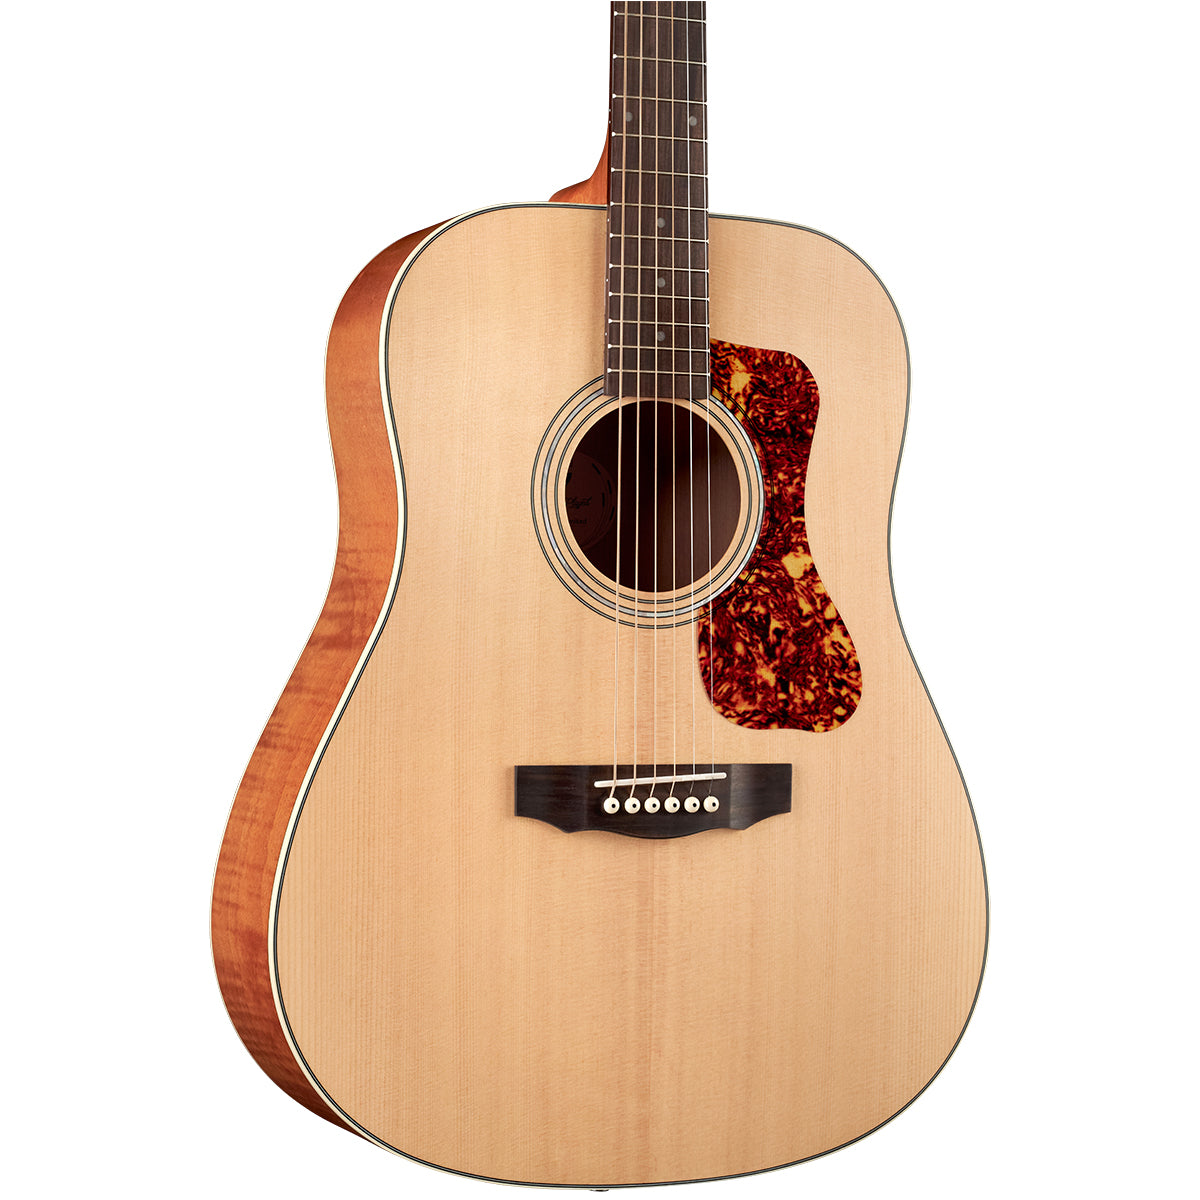 Guild D-240E, Flamed Mahogany Acoustic-Electric Guitar - Natural